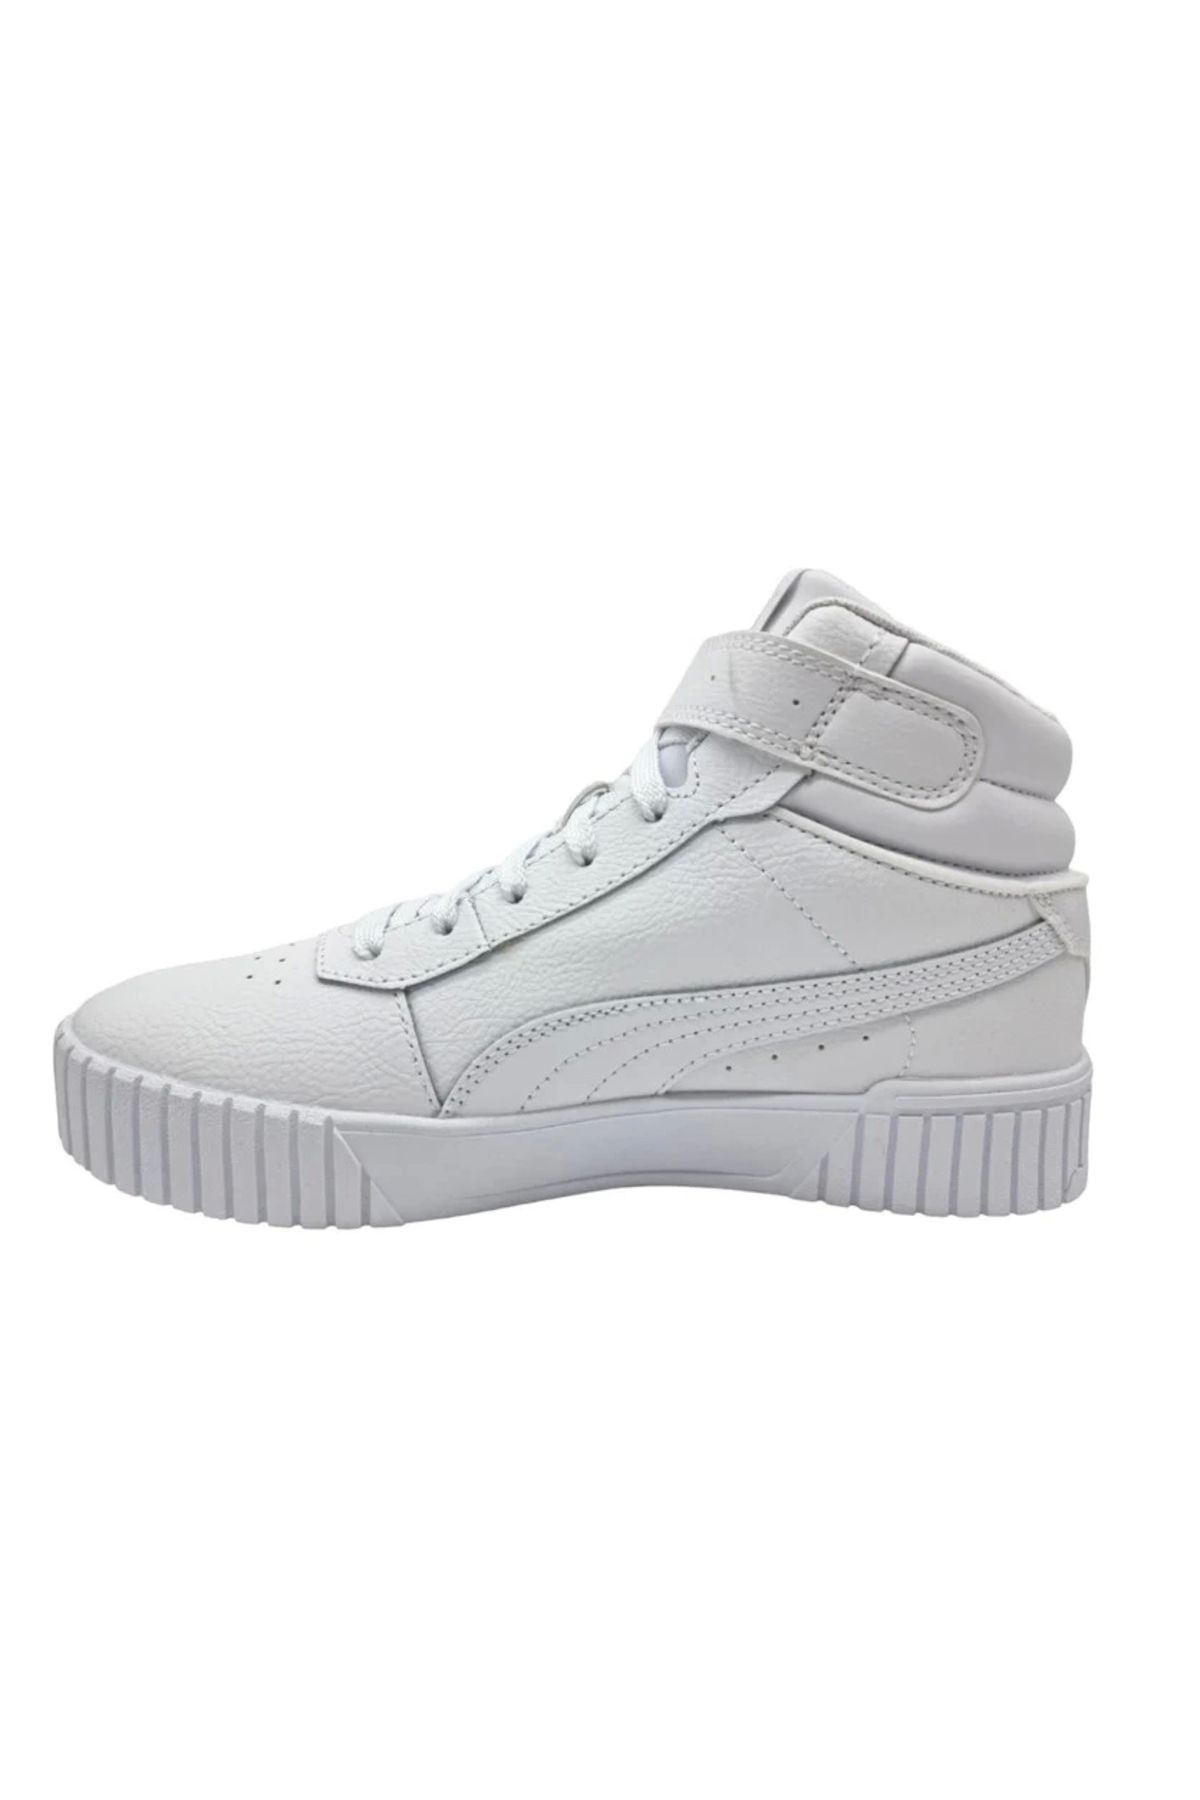 Puma Carina 2.0 Mid Kadın 38585102 Beyaz Sneaker Ayakkabı